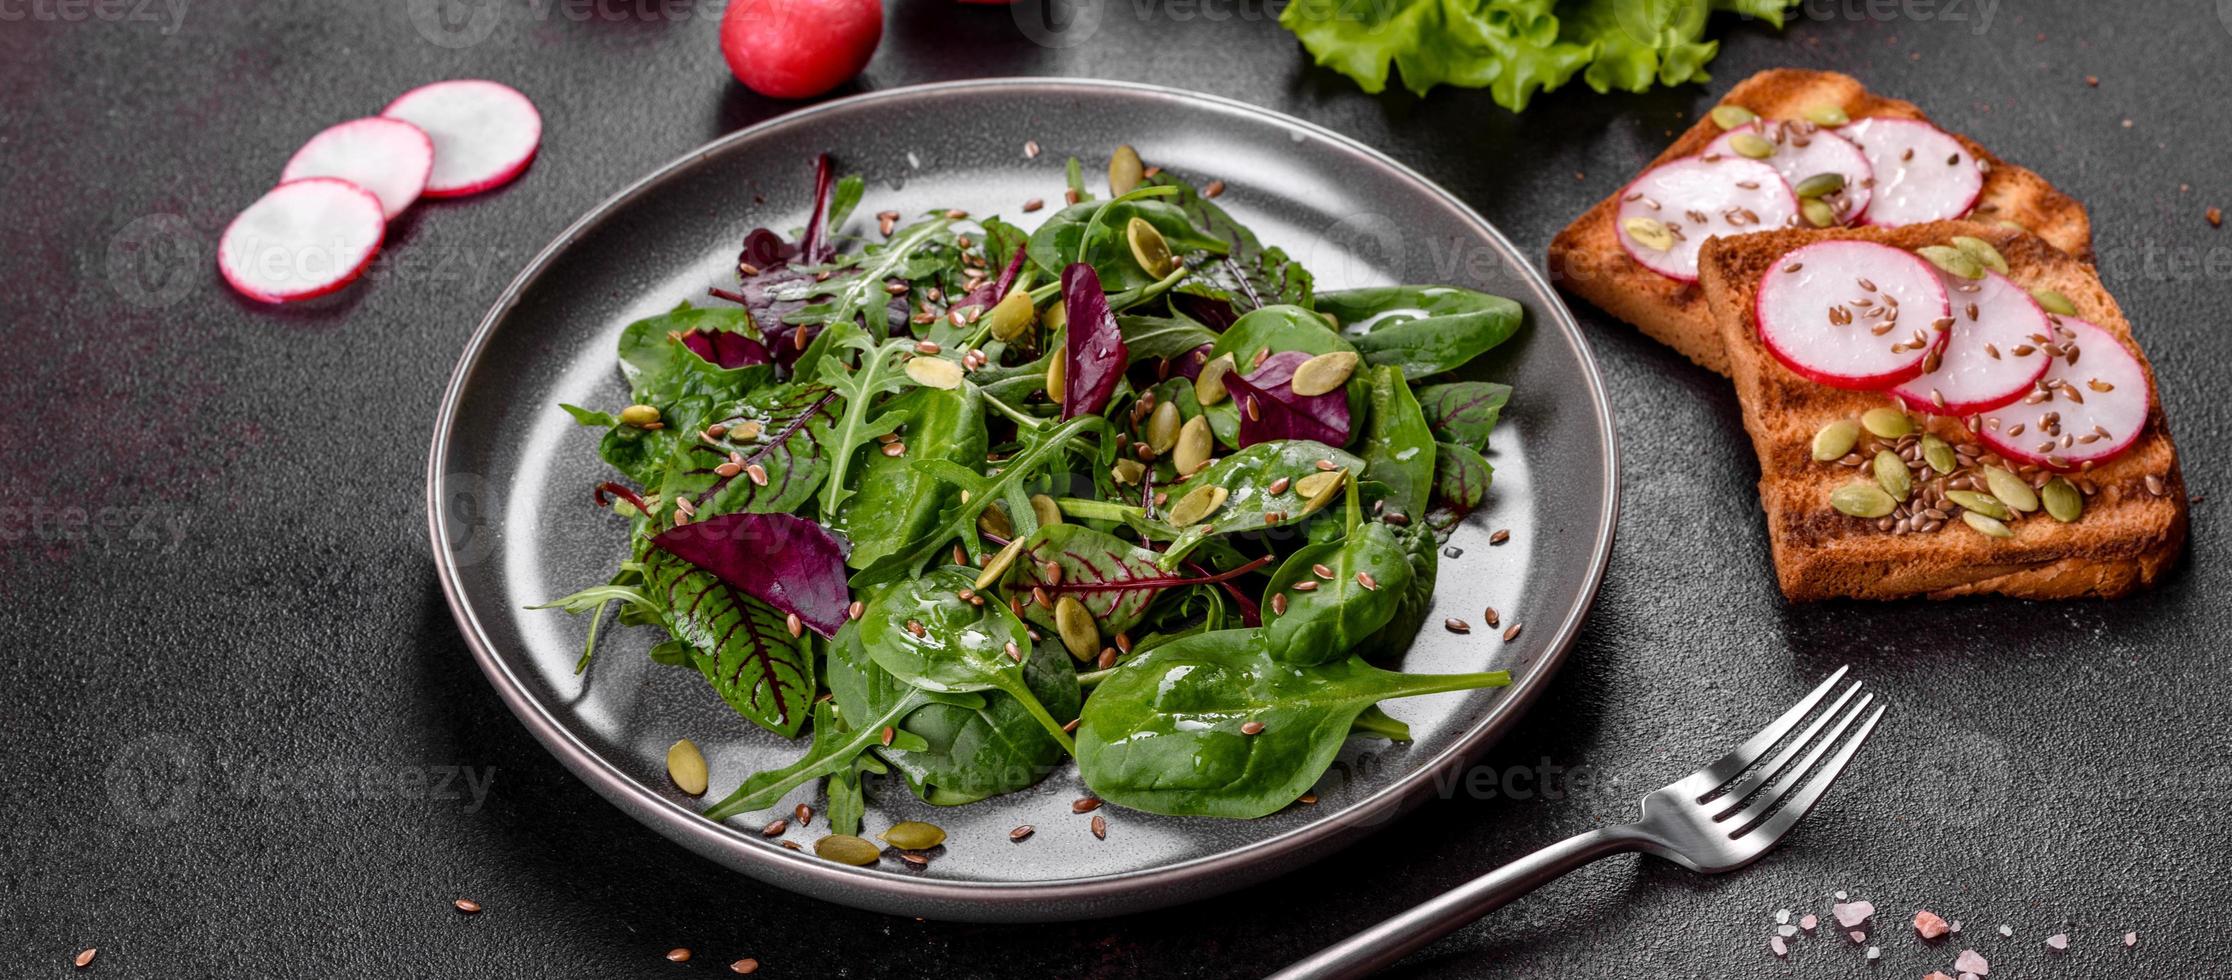 salade juteuse fraîche avec feuilles de mangold, roquette, épinards et betteraves photo